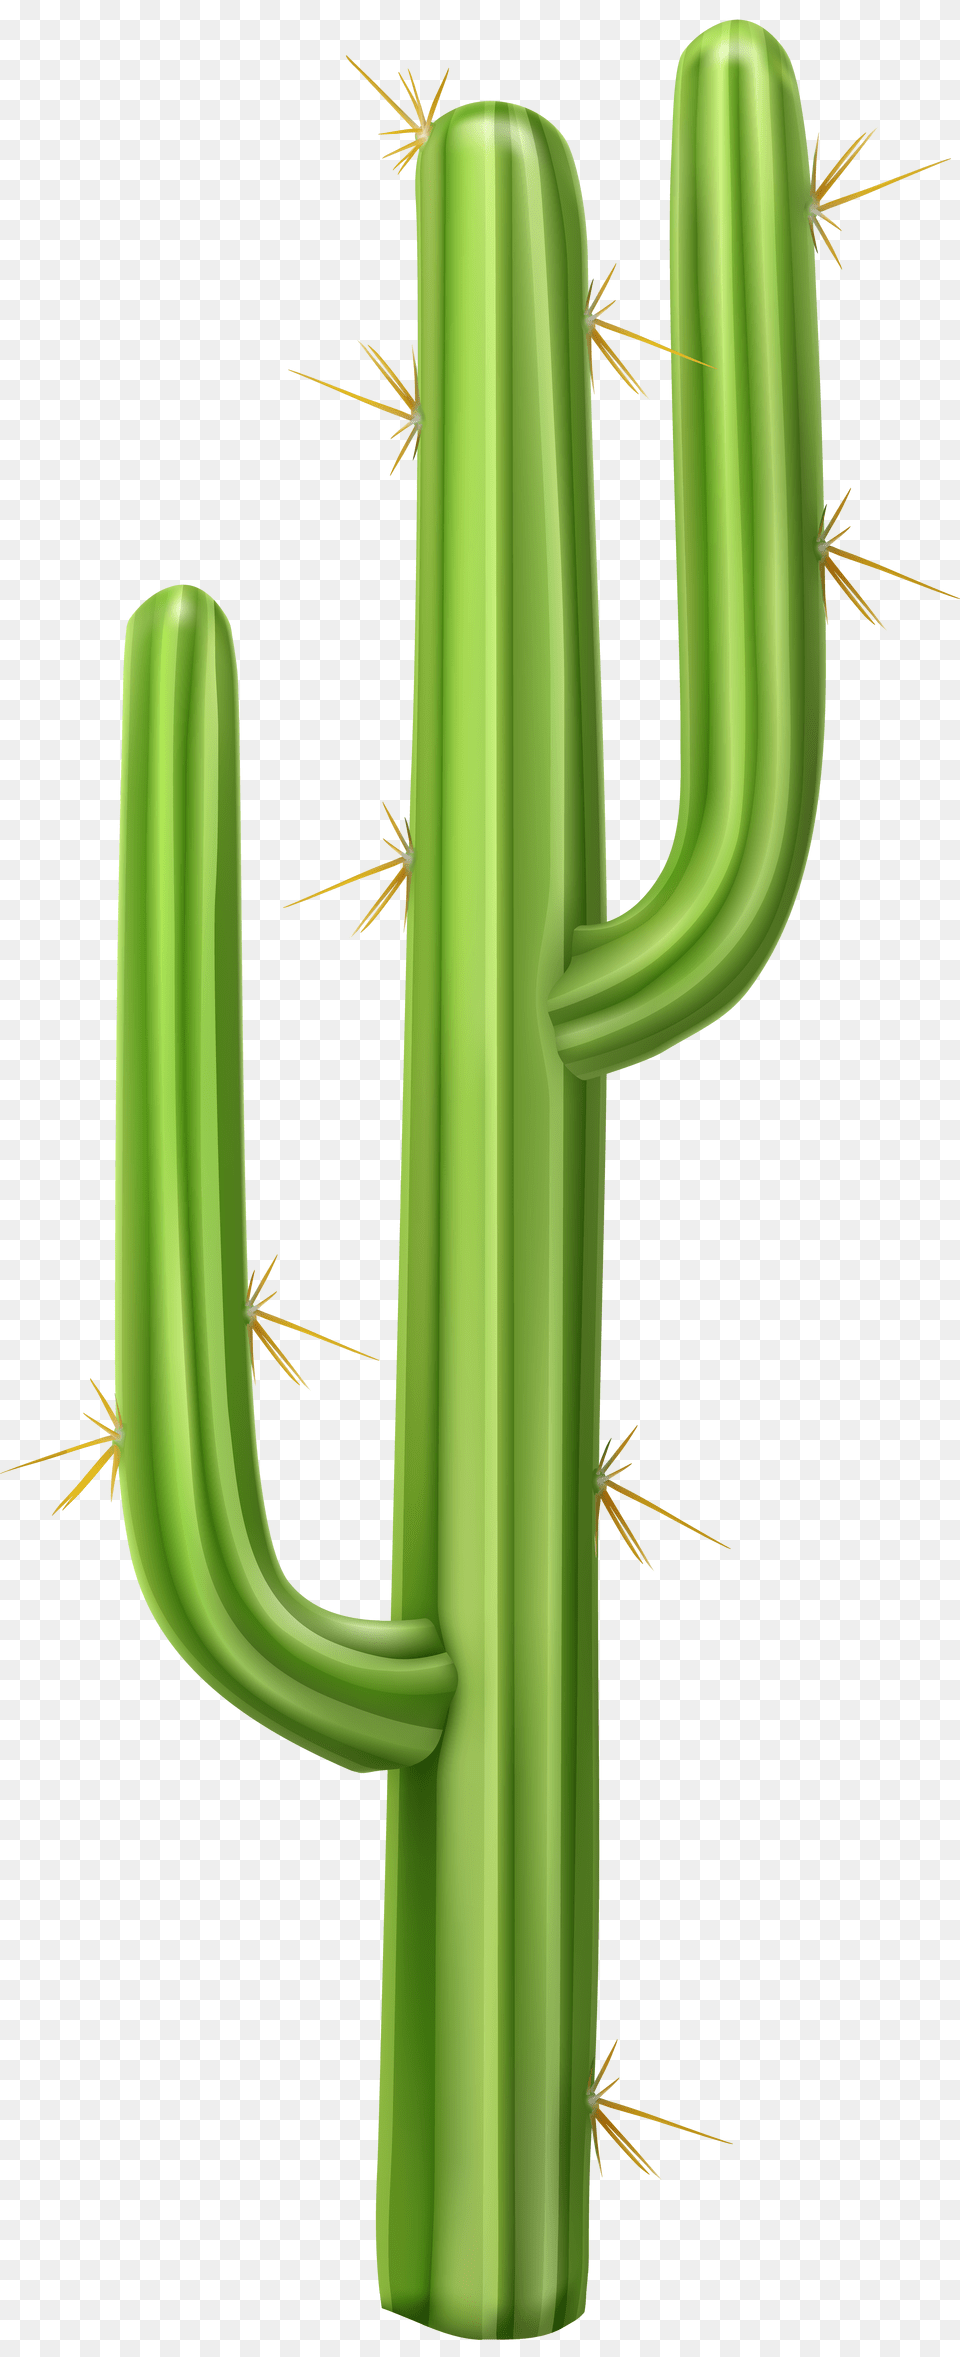 Cactus Transparent Clip Art, Plant Free Png Download